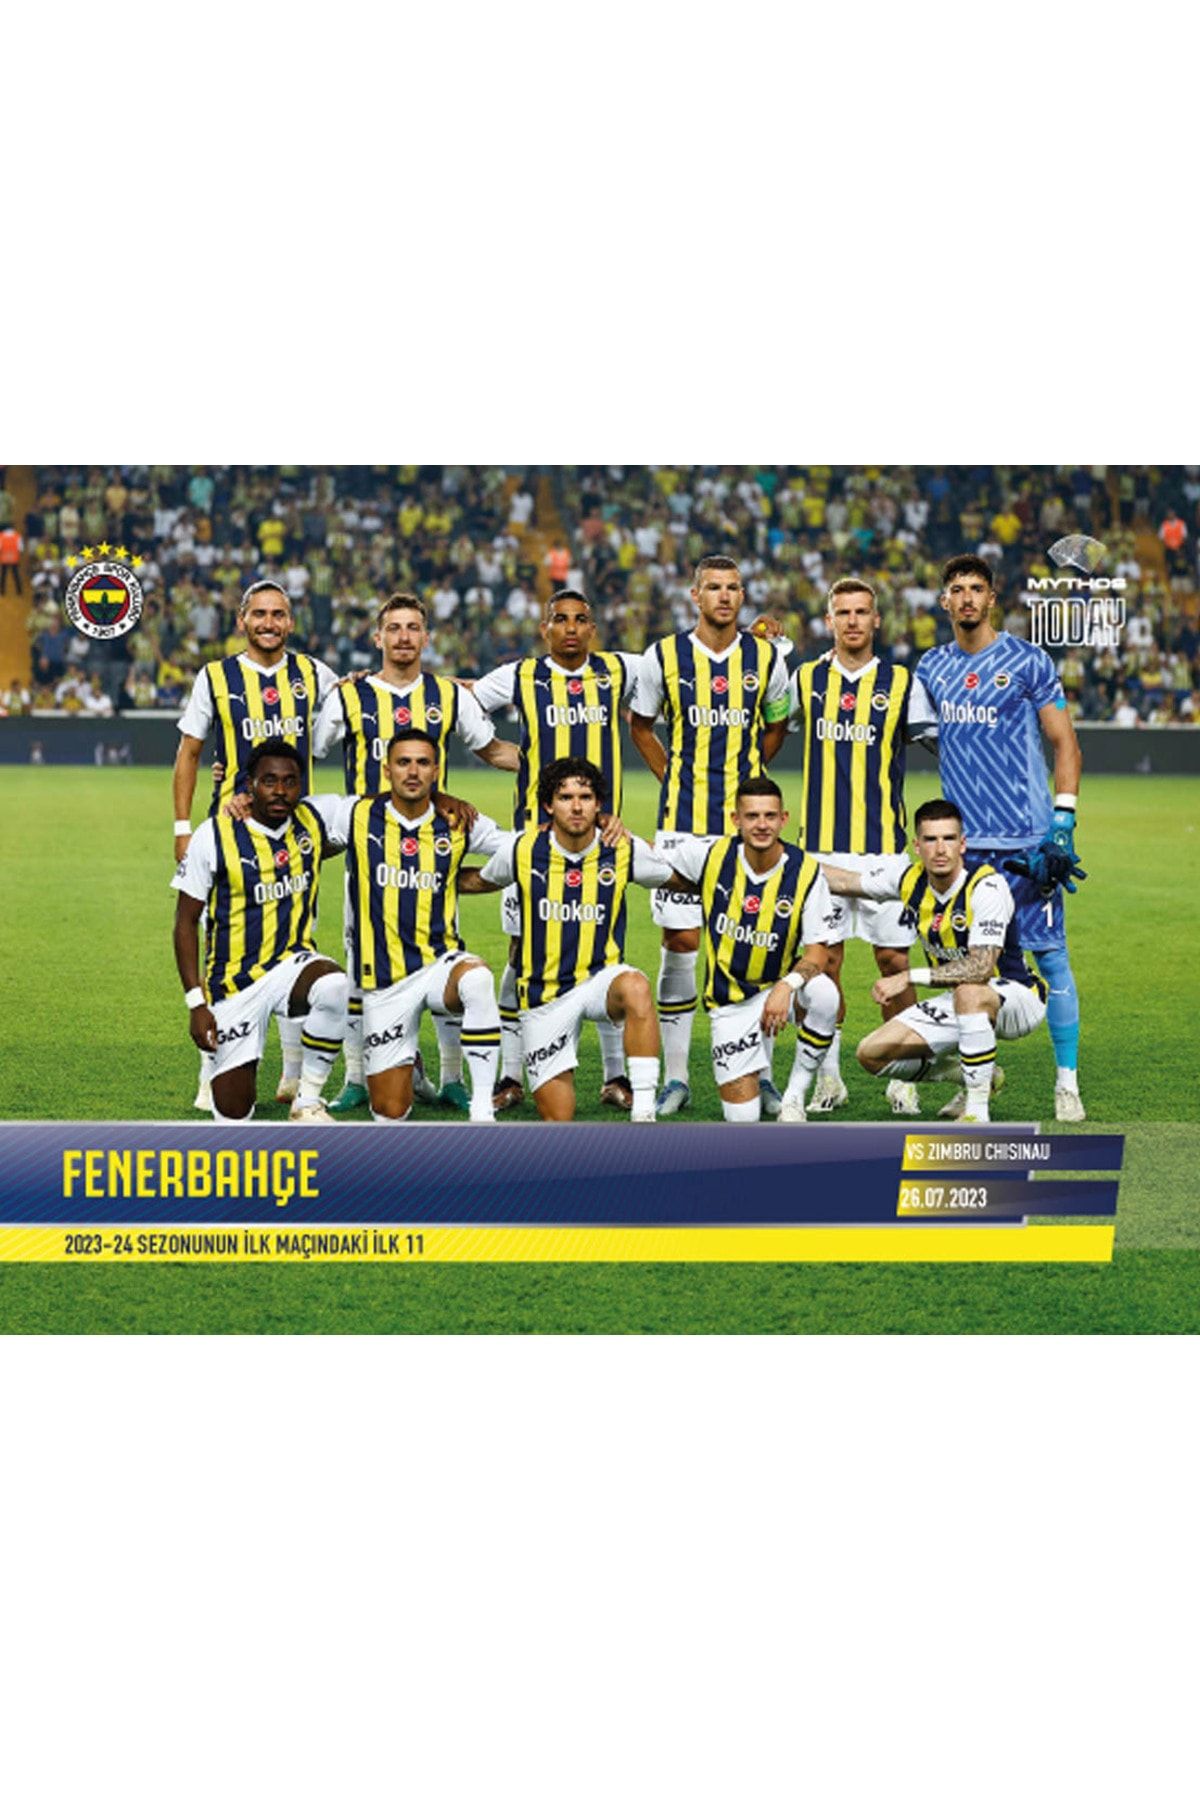 Fenerbahçe FENERBAHÇE / 2023-24 Sezonunun İlk Maçındaki İlk 11